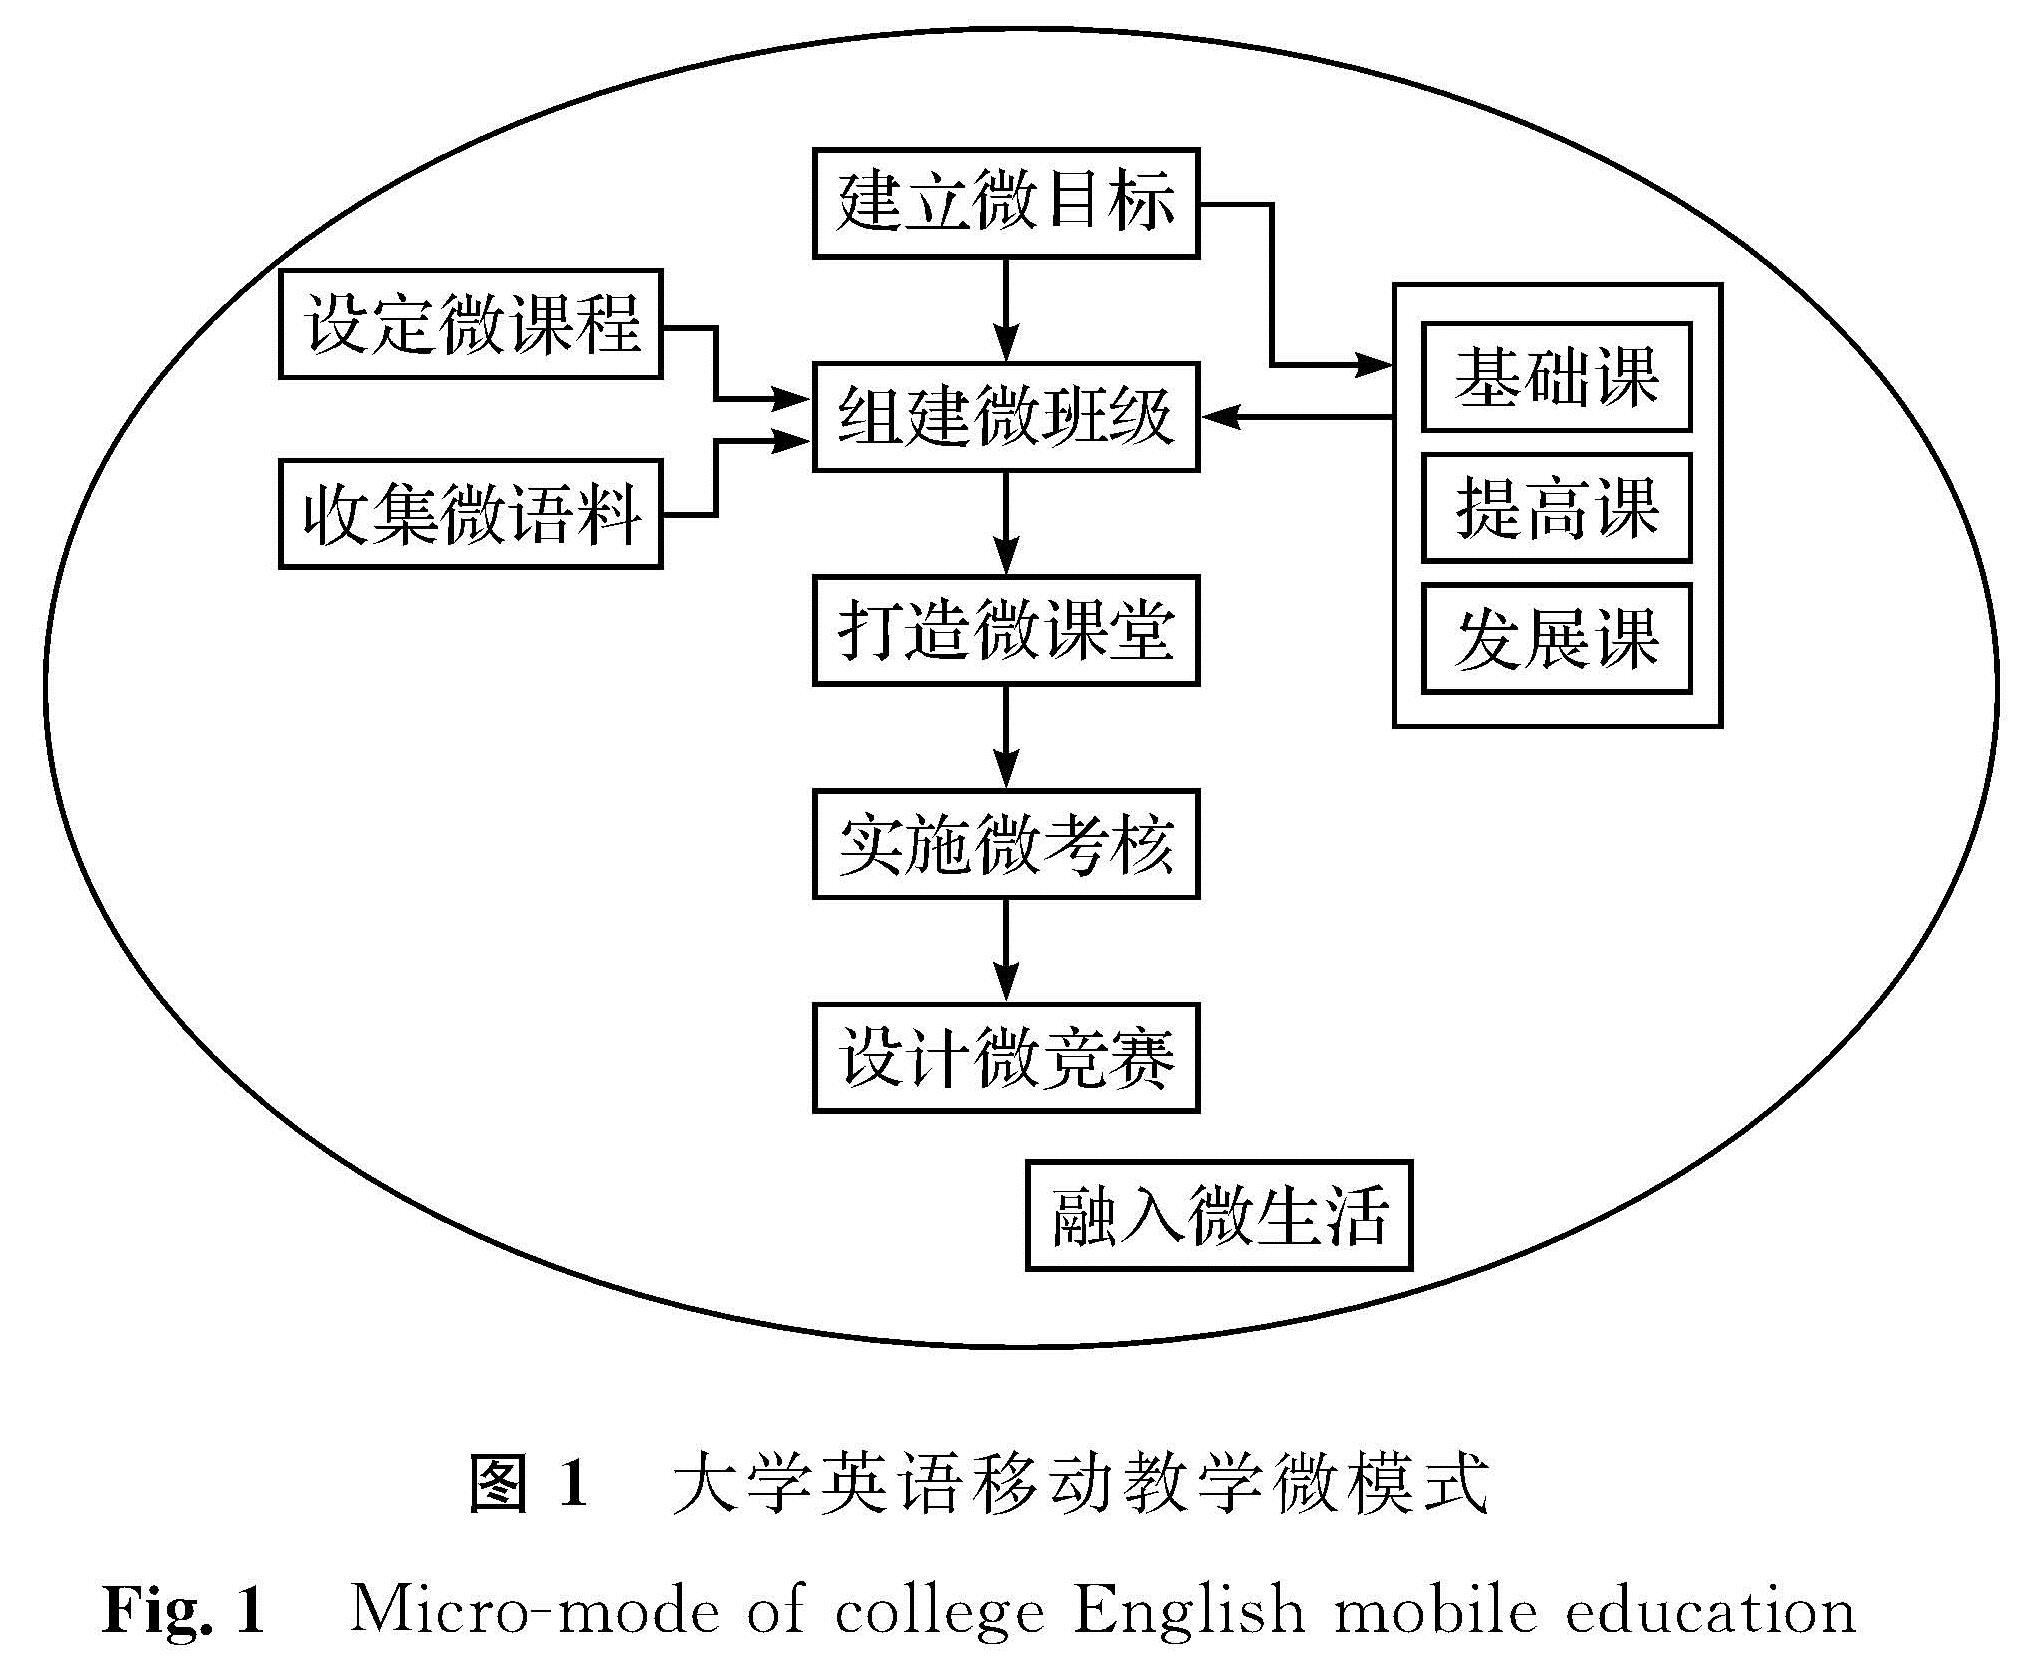 图1 大学英语移动教学微模式<br/>Fig.1 Micro-mode of college English mobile education